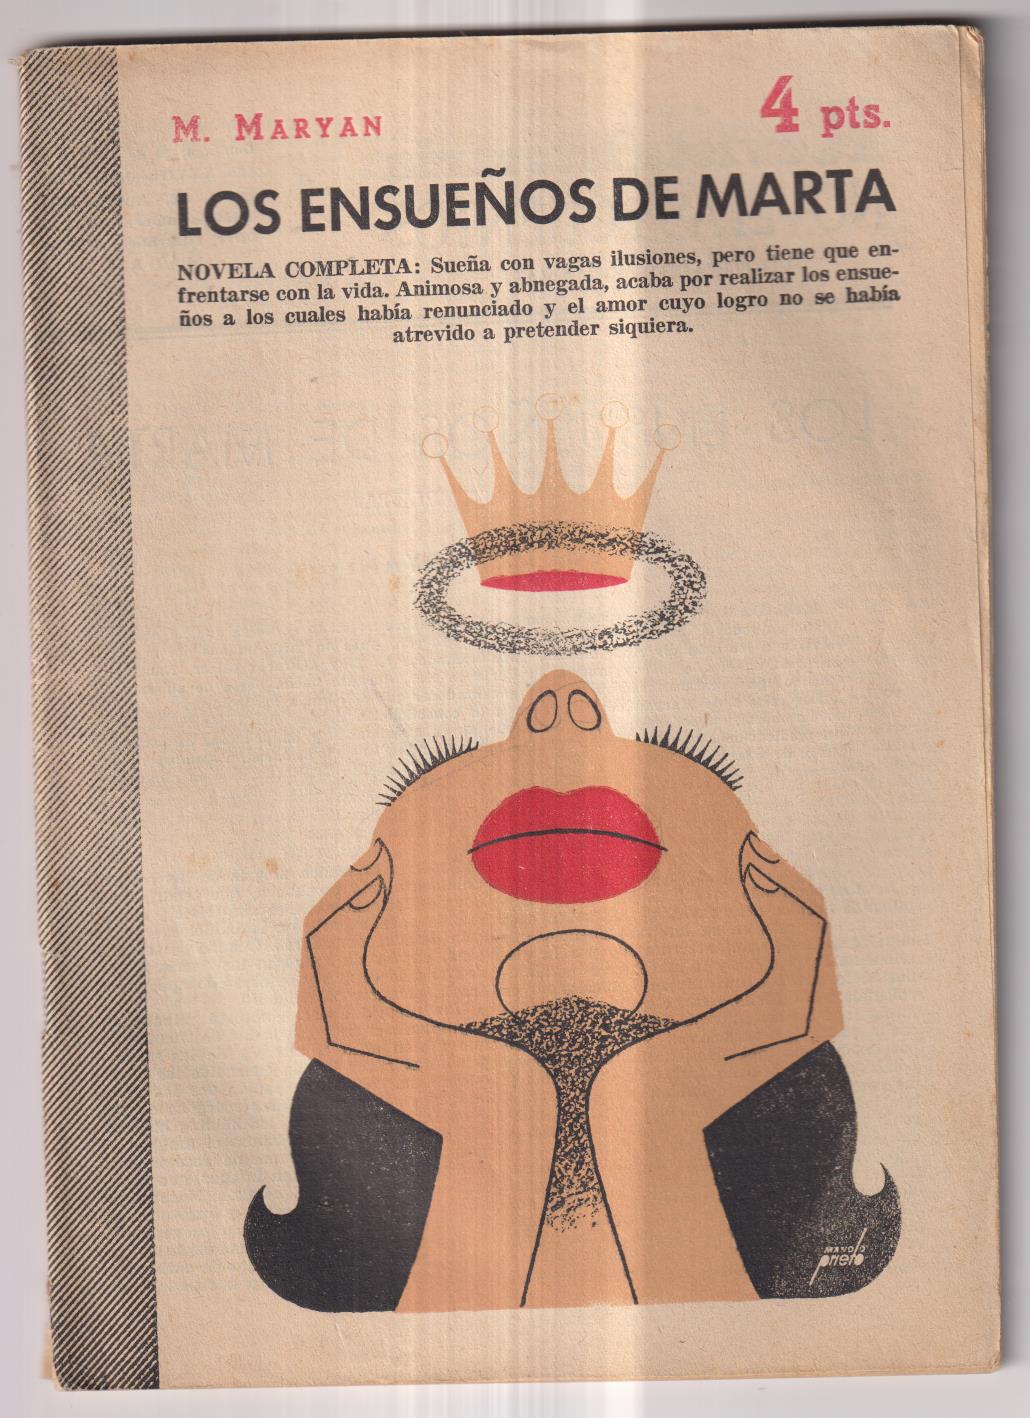 Revista Literaria Novelas y Cuentos nº 1303. M. Mayan. los ensueños DE MARTA